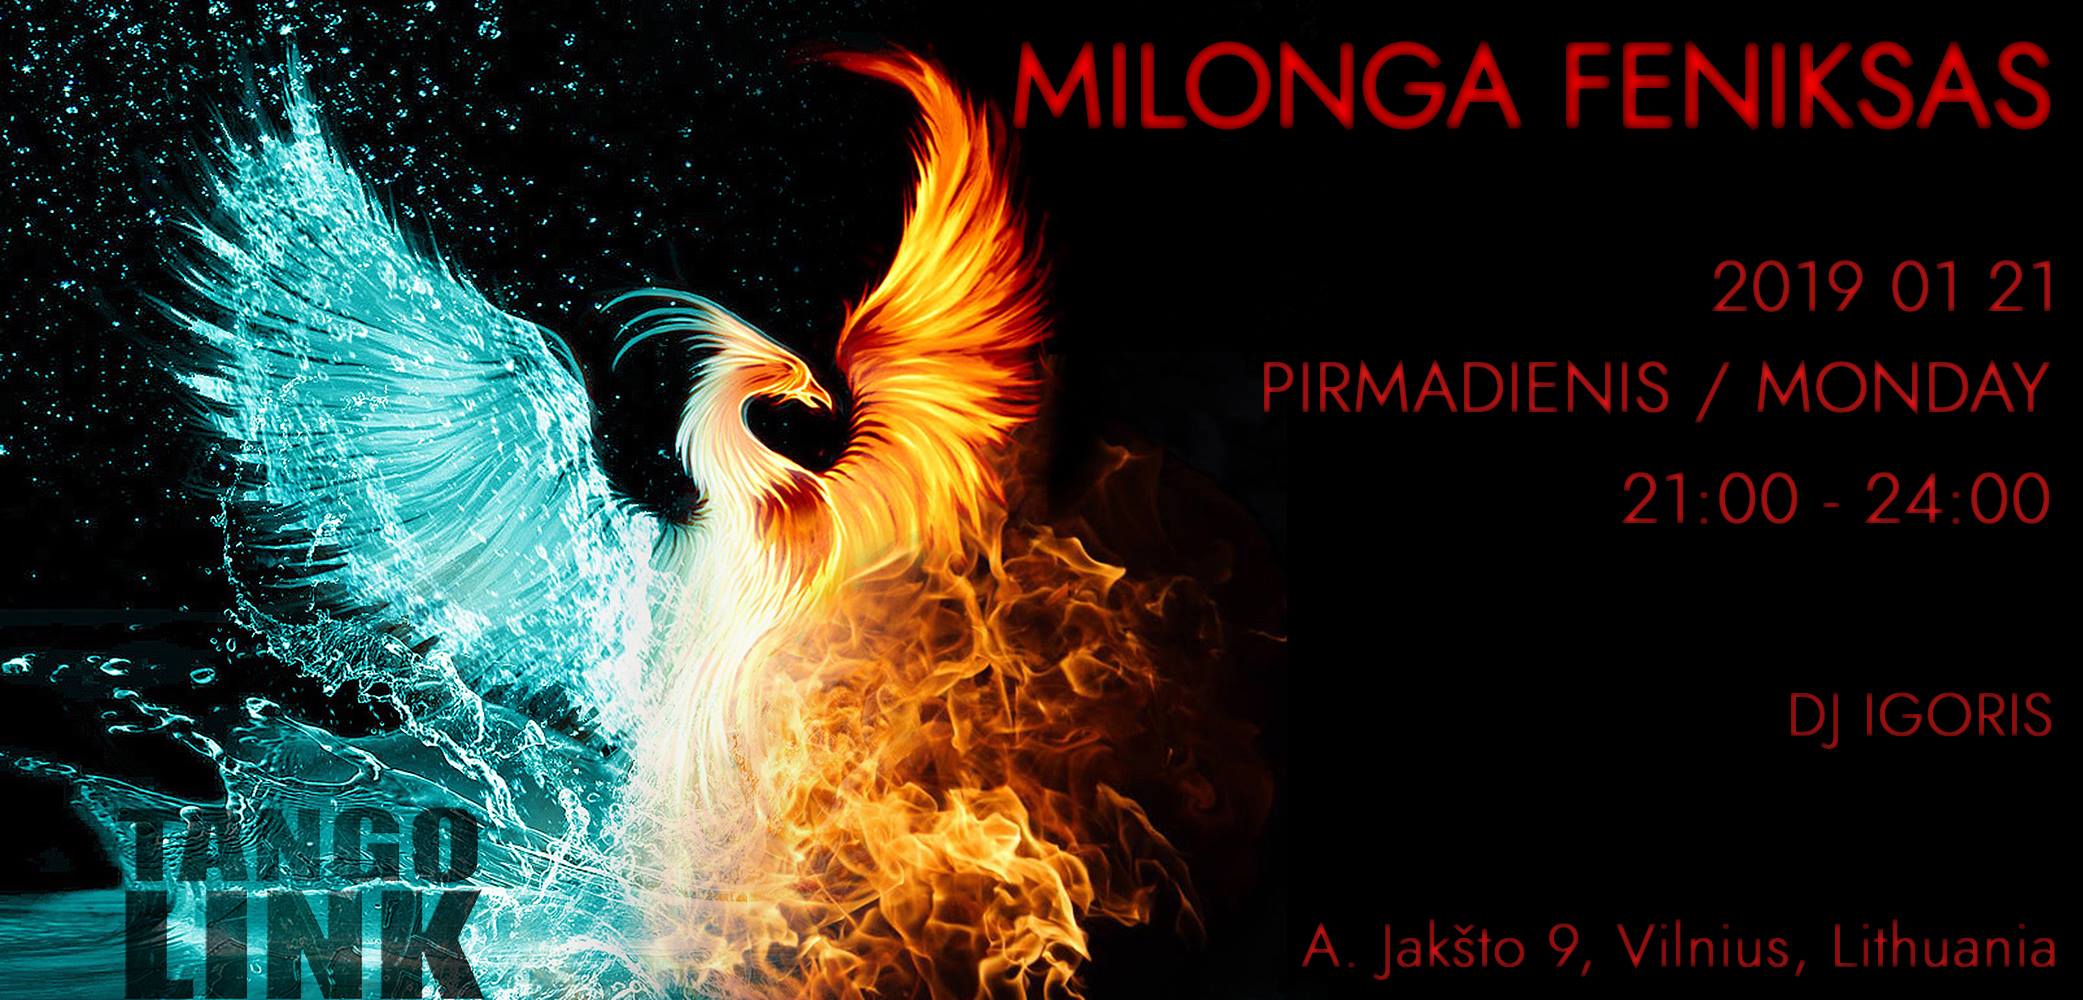 Milonga Feniksas Tango Link 2019-01-21 1